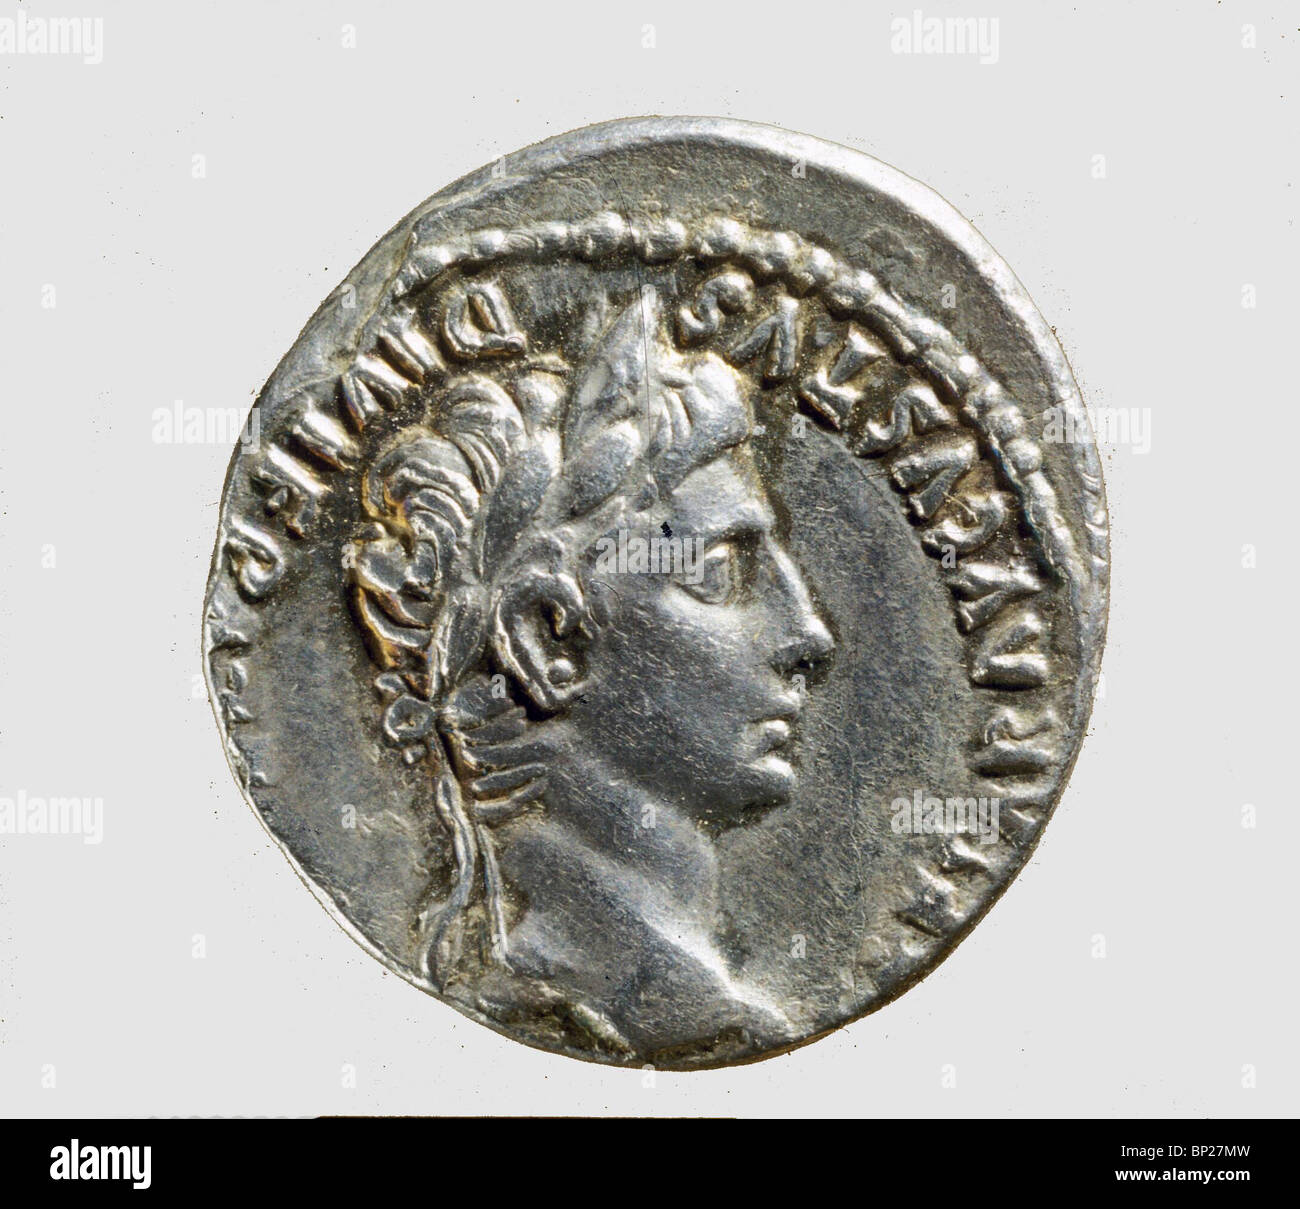 931. Pièce de monnaie romaine avec le buste de l'empereur Auguste, (30 av. - AD 14). Banque D'Images